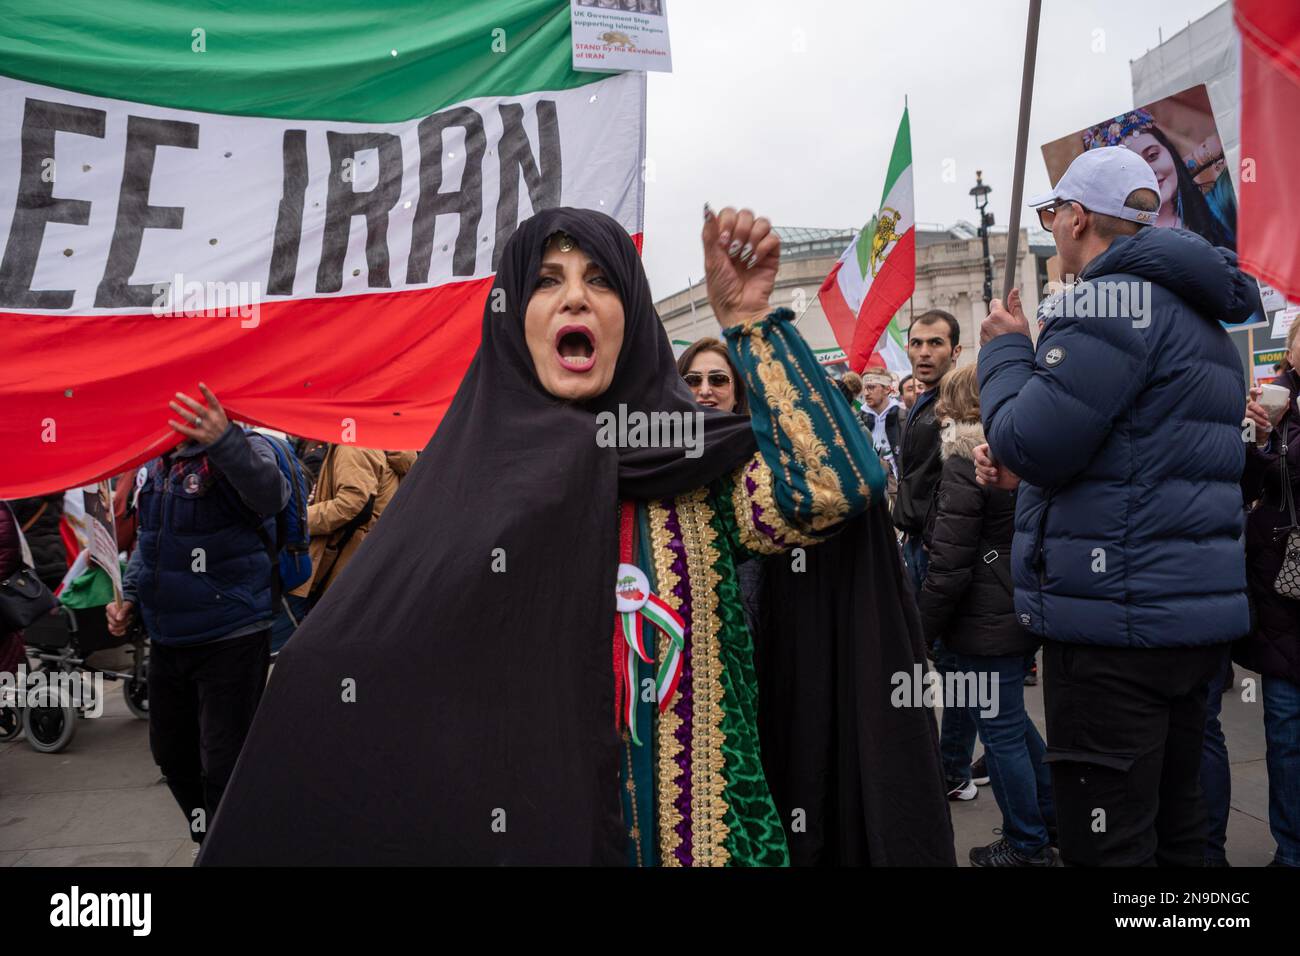 Des milliers de personnes se sont rassemblées sur Trafalgar Square pour montrer leur unité face à l'anniversaire de 44th du régime dictatorial en Iran. Londres/Royaume-Uni Banque D'Images